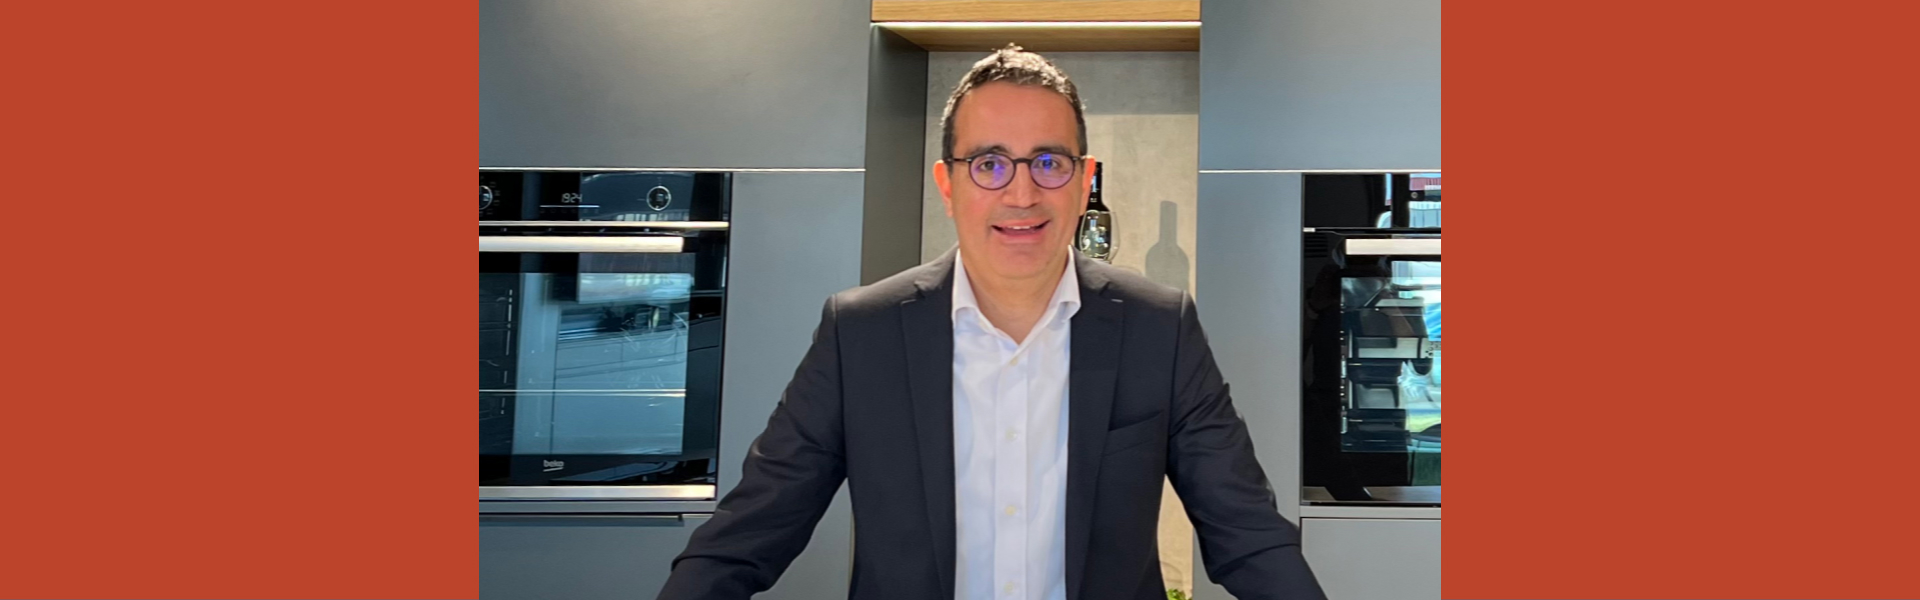 Dr. Evren Aksoy ist neuer Geschäftsführer bei Beko Grundig Deutschland